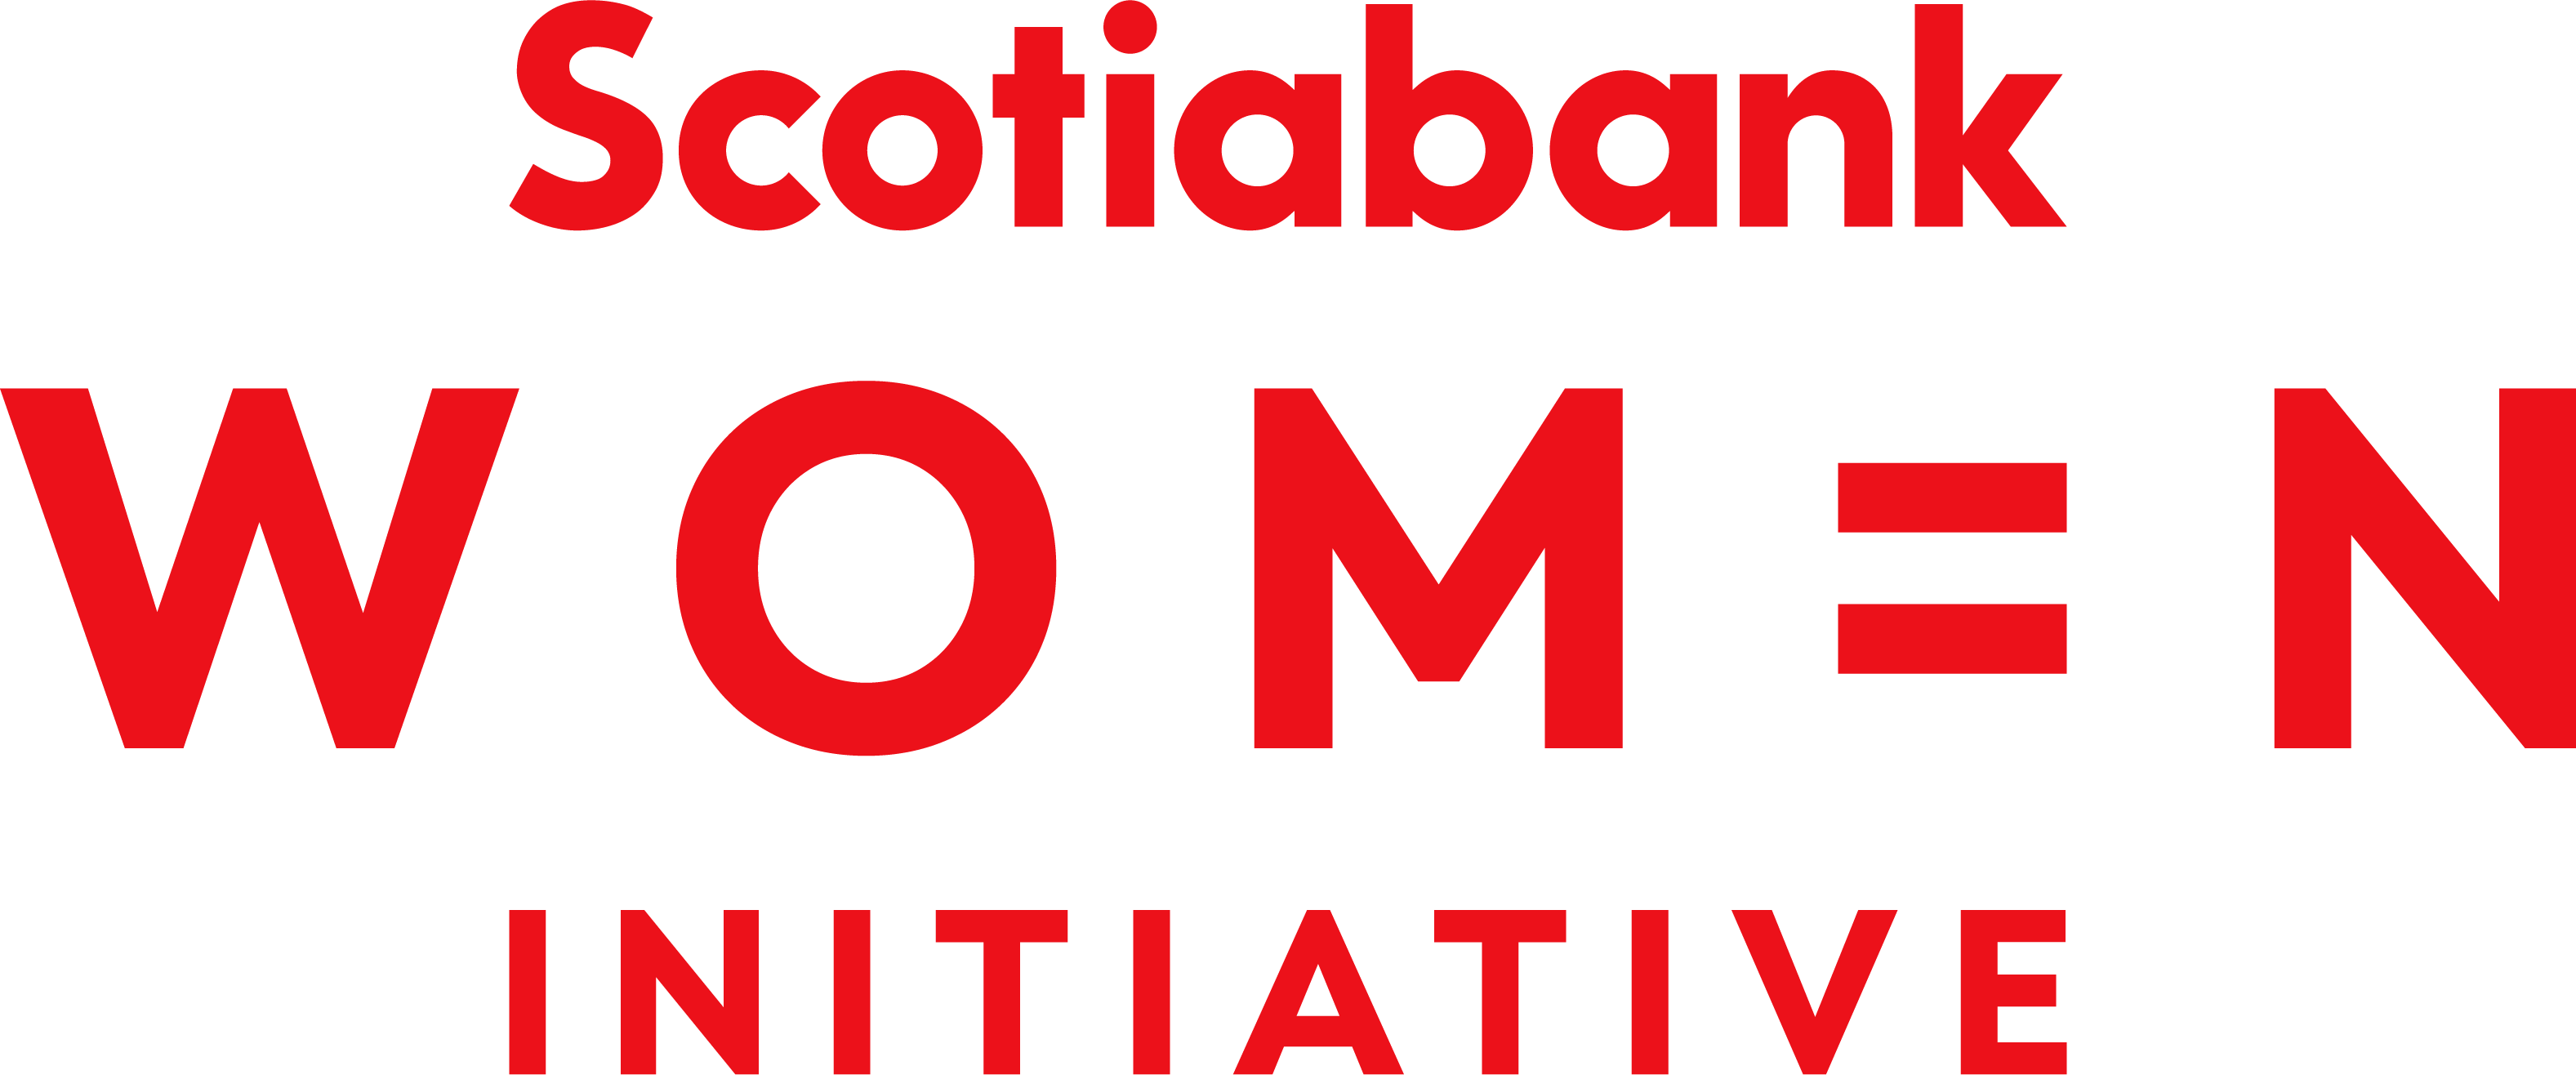 L’initiative Femmes de la Banque Scotia logo